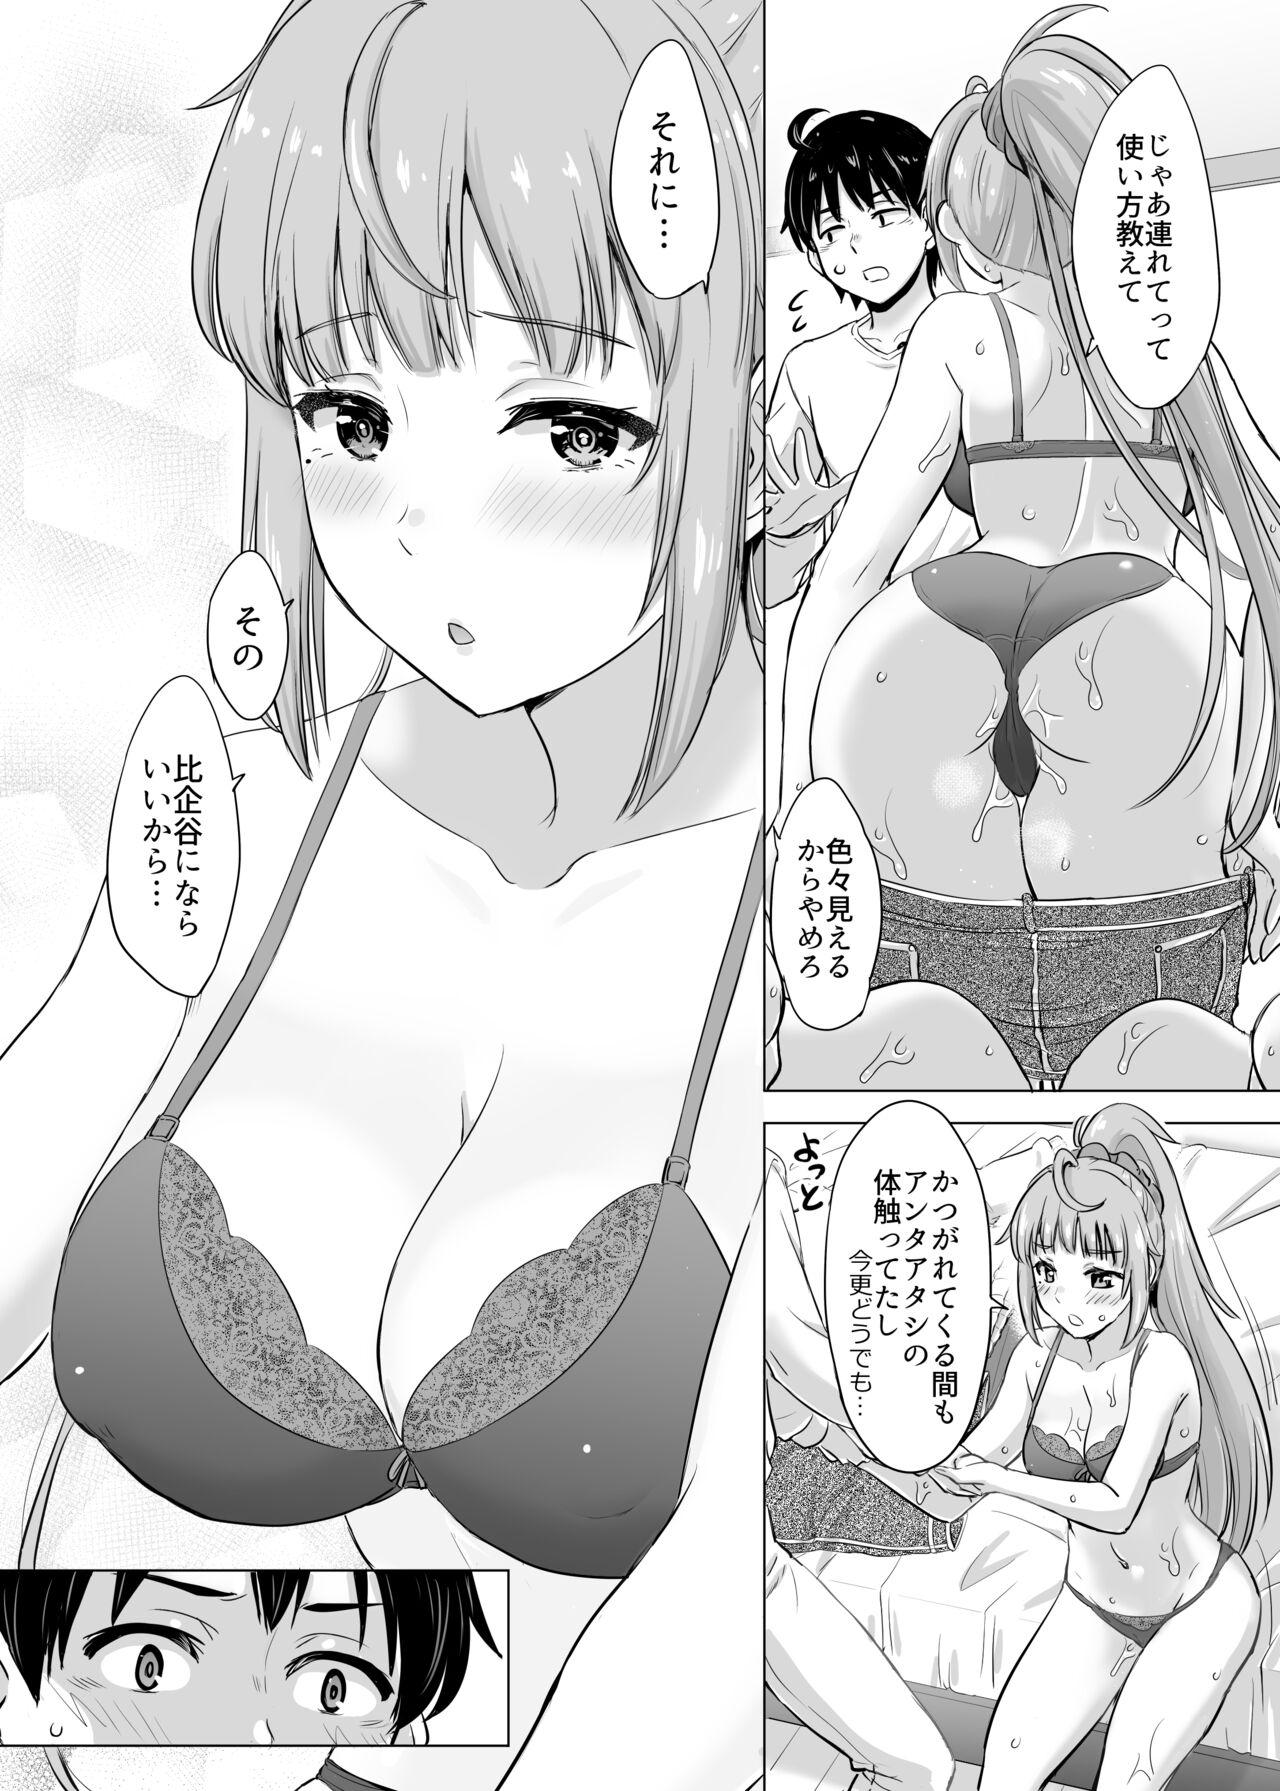 Gay Medical あーしさんサキサキ漫画 - Yahari ore no seishun love come wa machigatteiru Gay Pov - Page 5